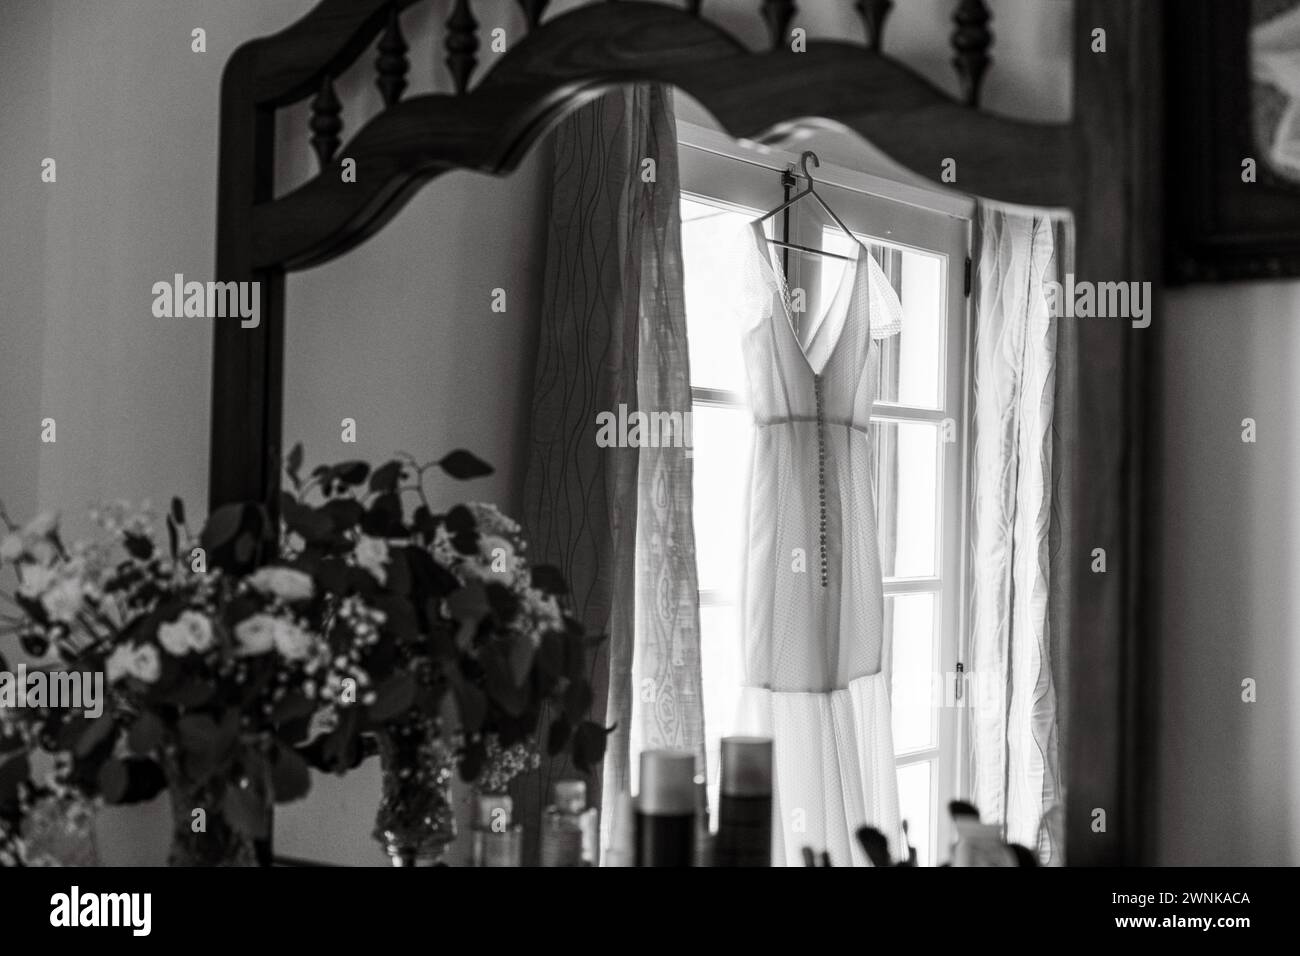 Details zur Vorbereitung und zum Empfang am Hochzeitstag, weißes Kleid mit niedlichen Blumendetails und eucaliptus-Dekoration. Stockfoto